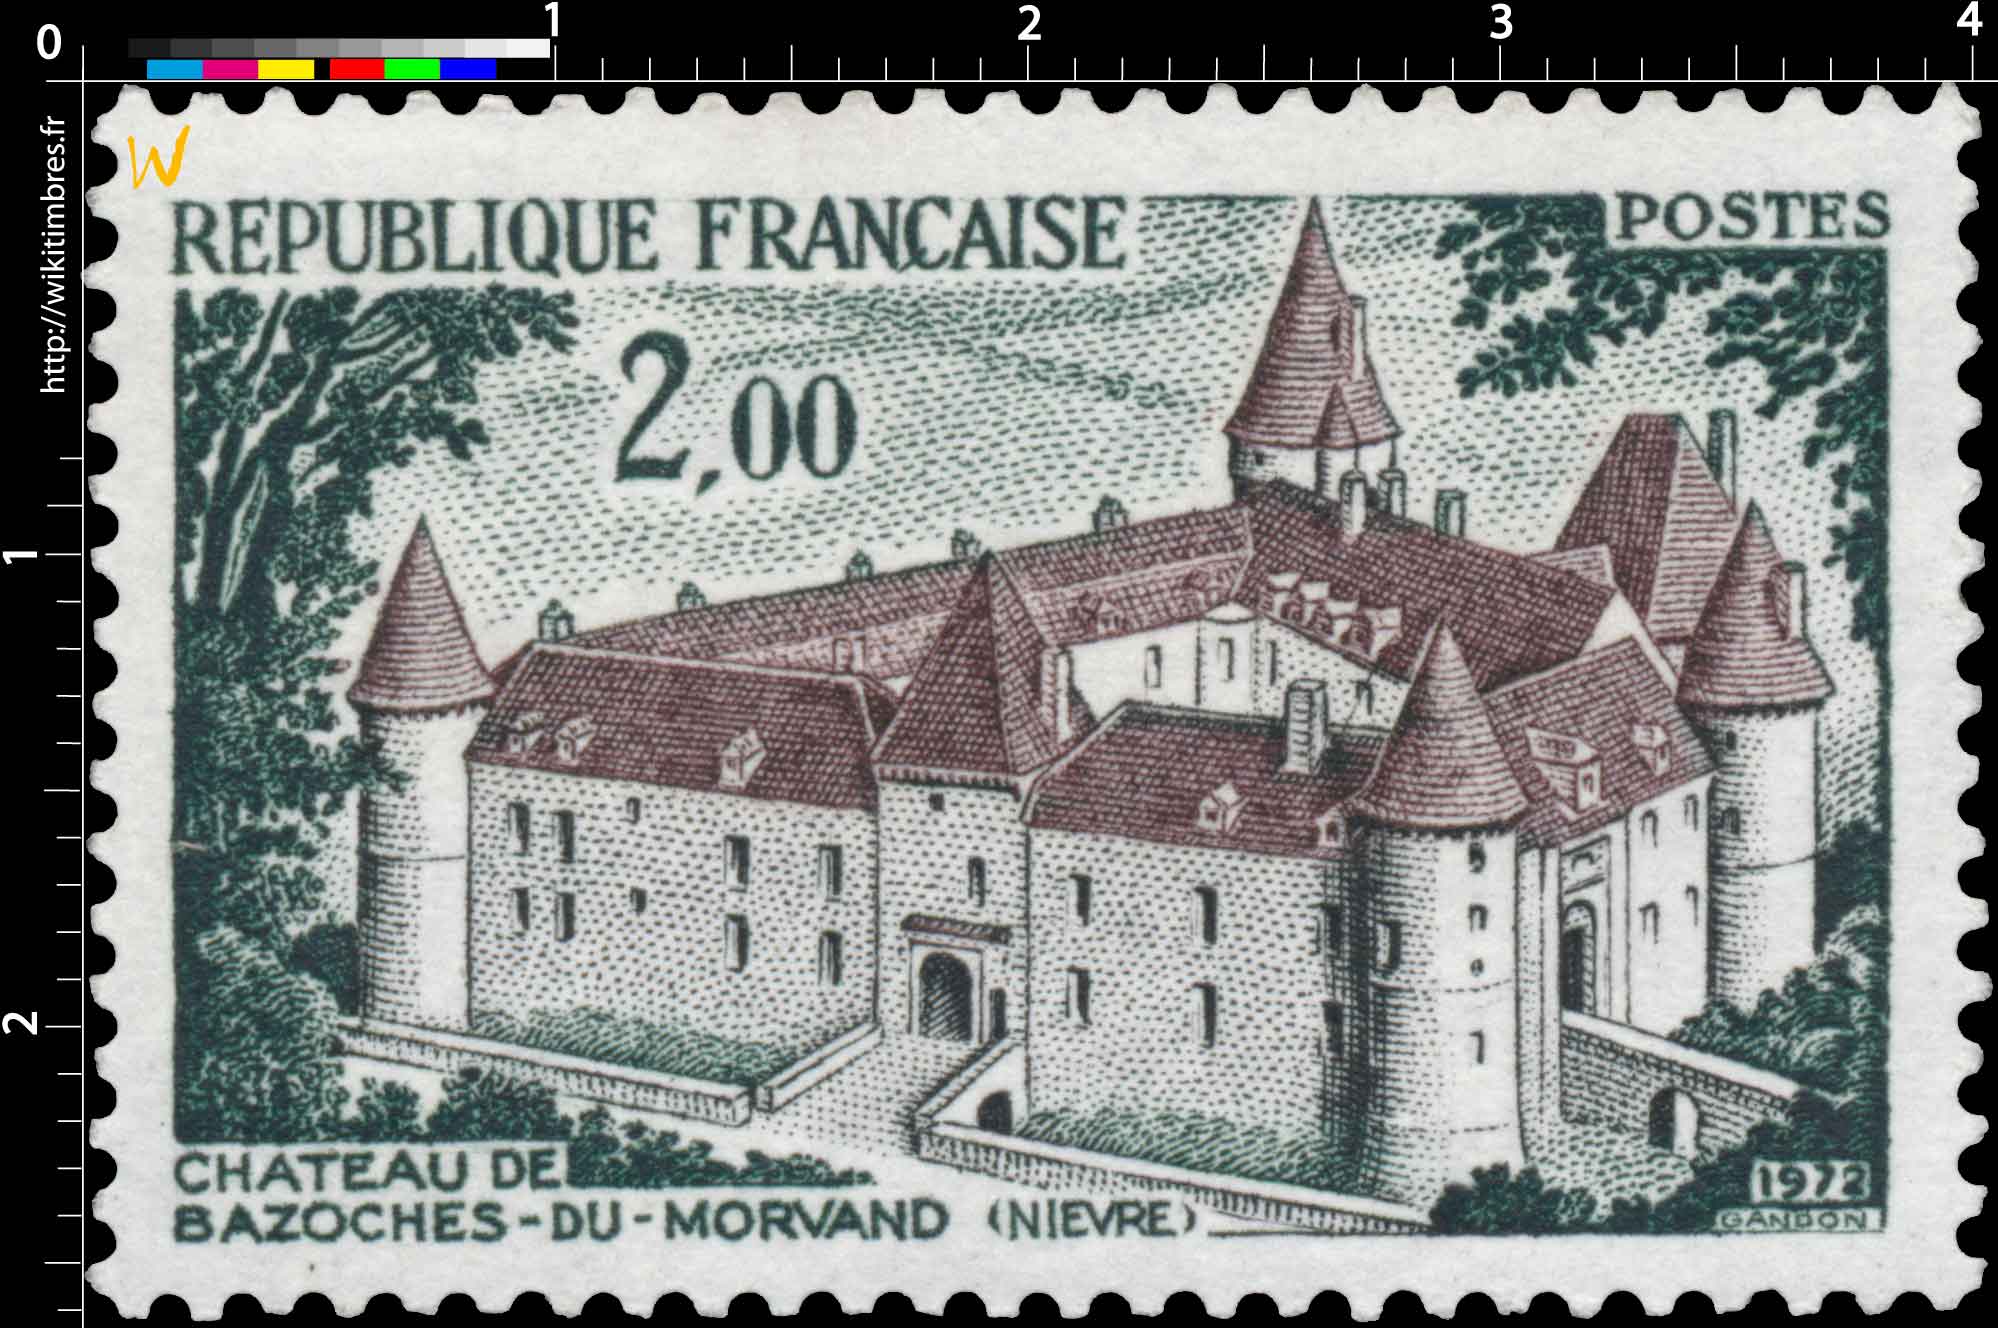 1972 CHÂTEAU DE BAZOCHES-DU-MORVAND (NIÈVRE)